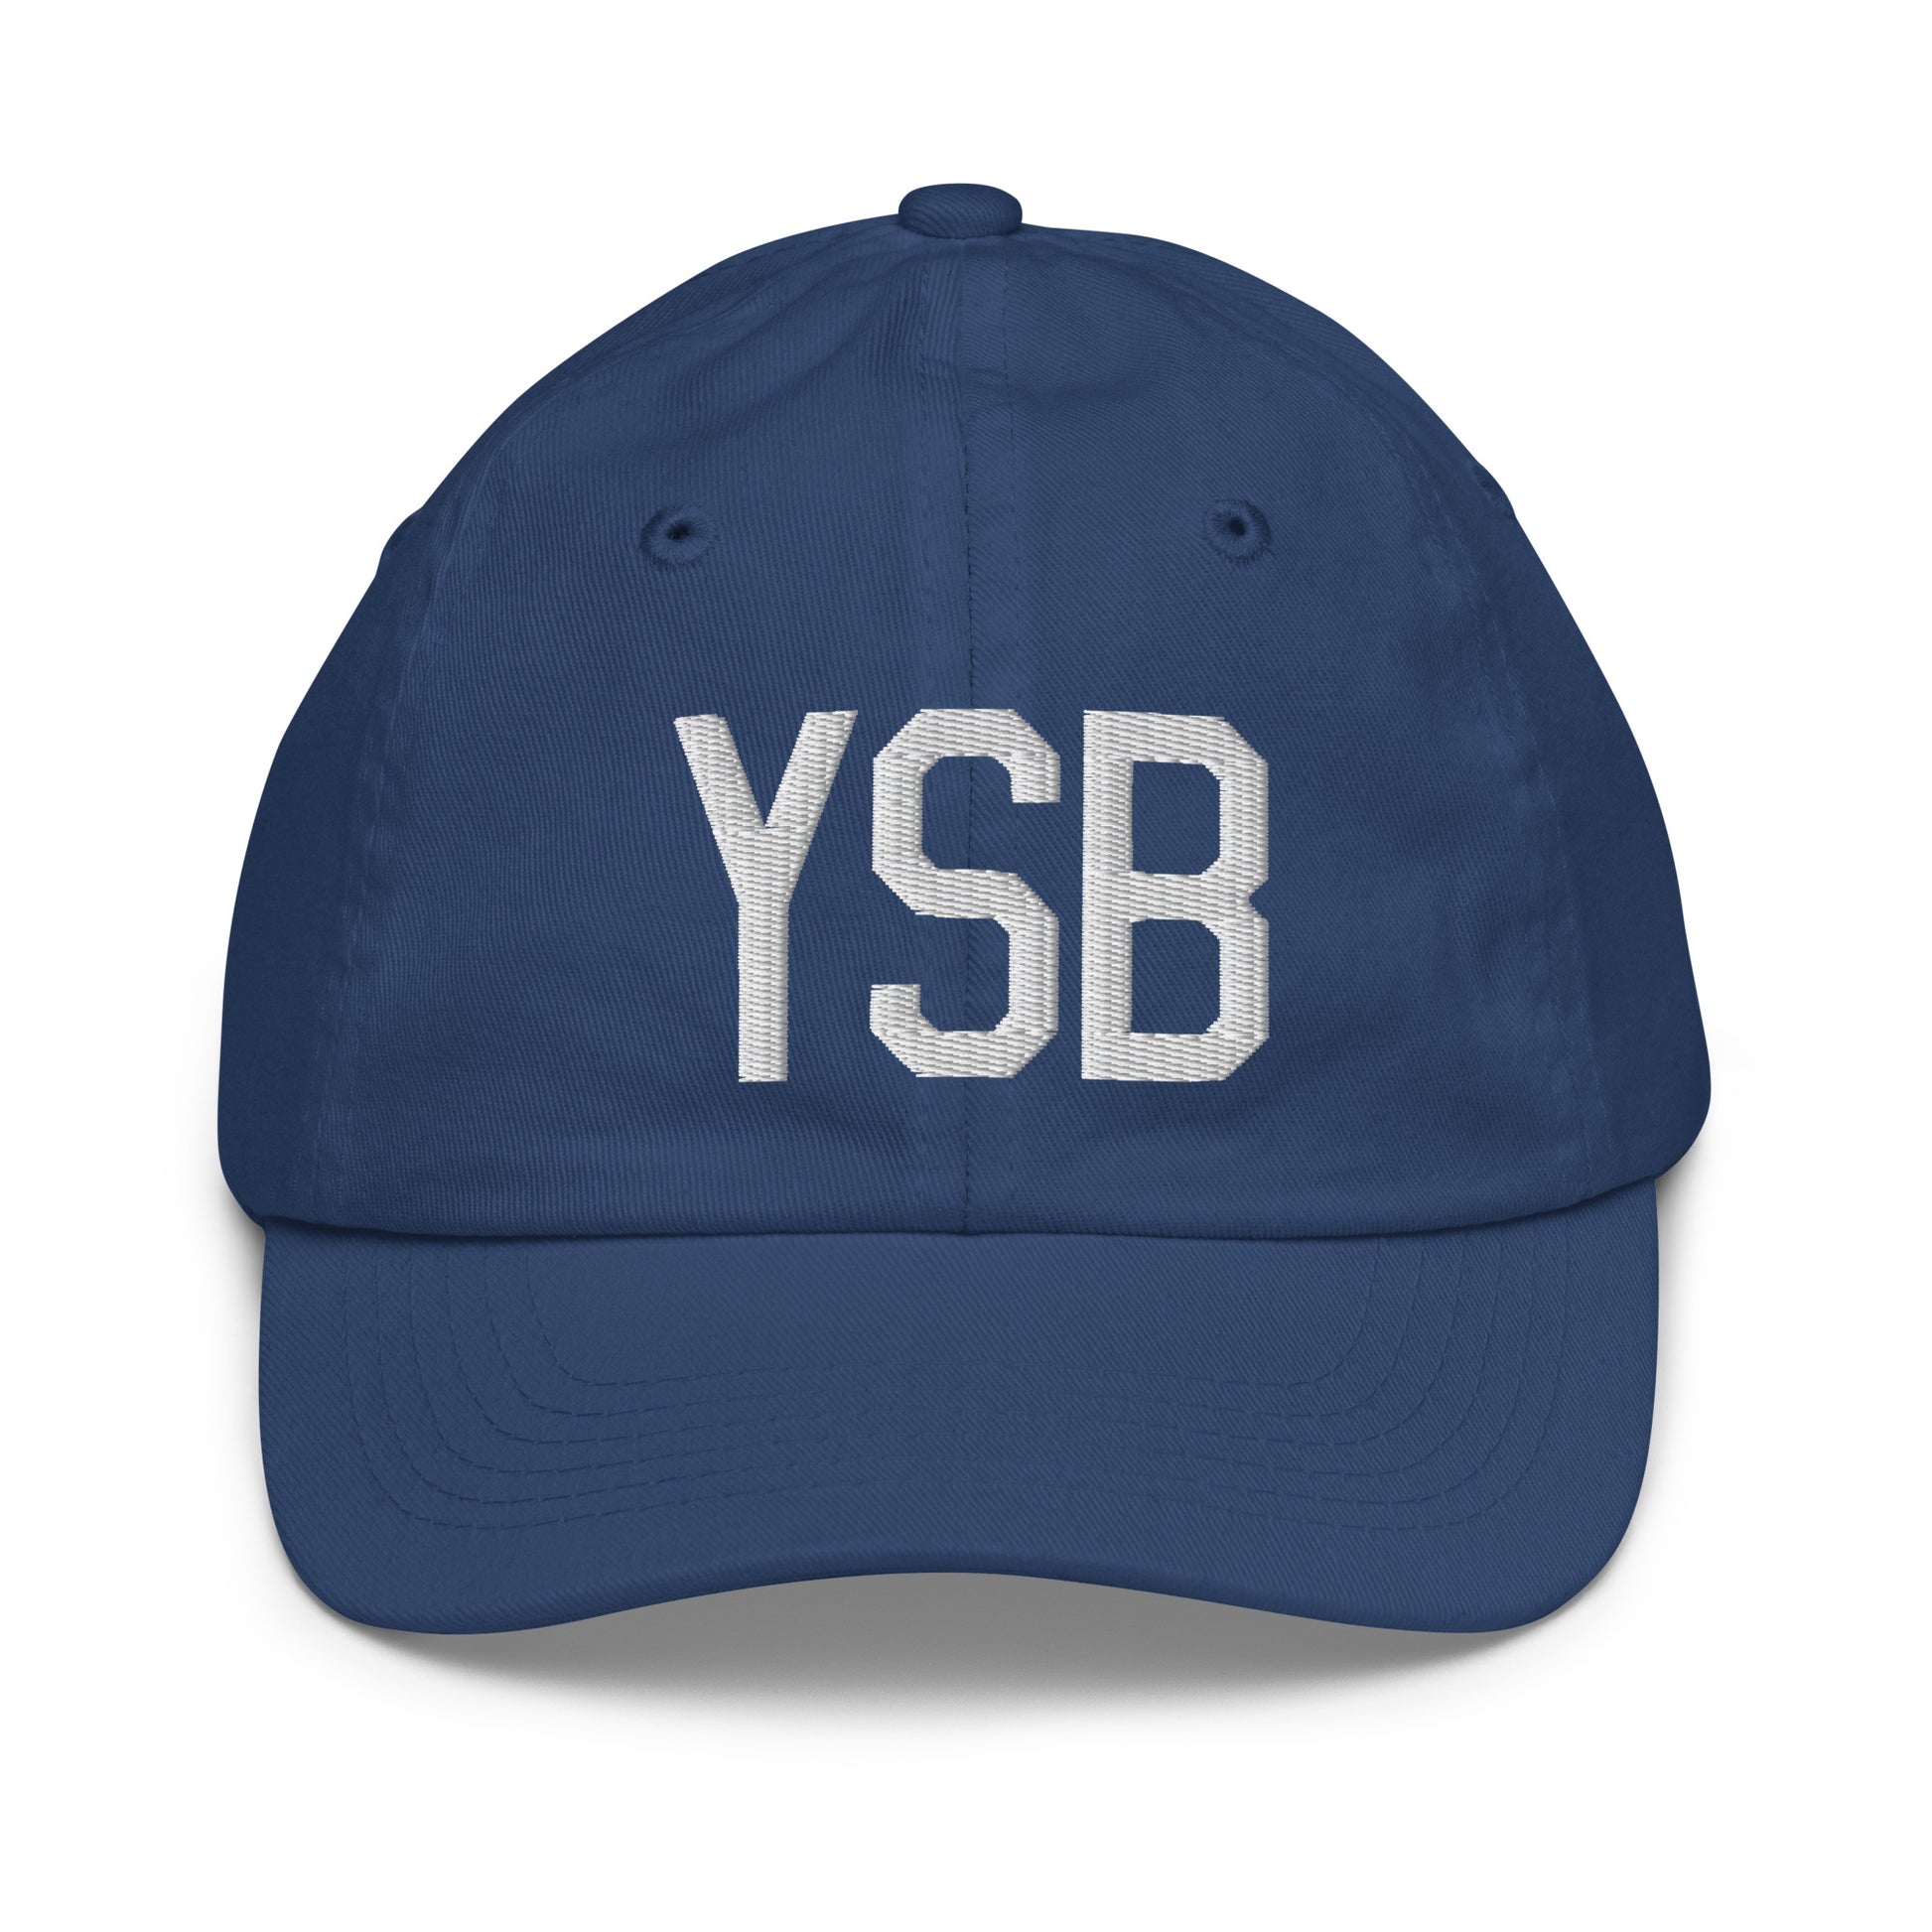 Airport Code Kid's Baseball Cap - White • YSB Sudbury • YHM Designs - Image 20